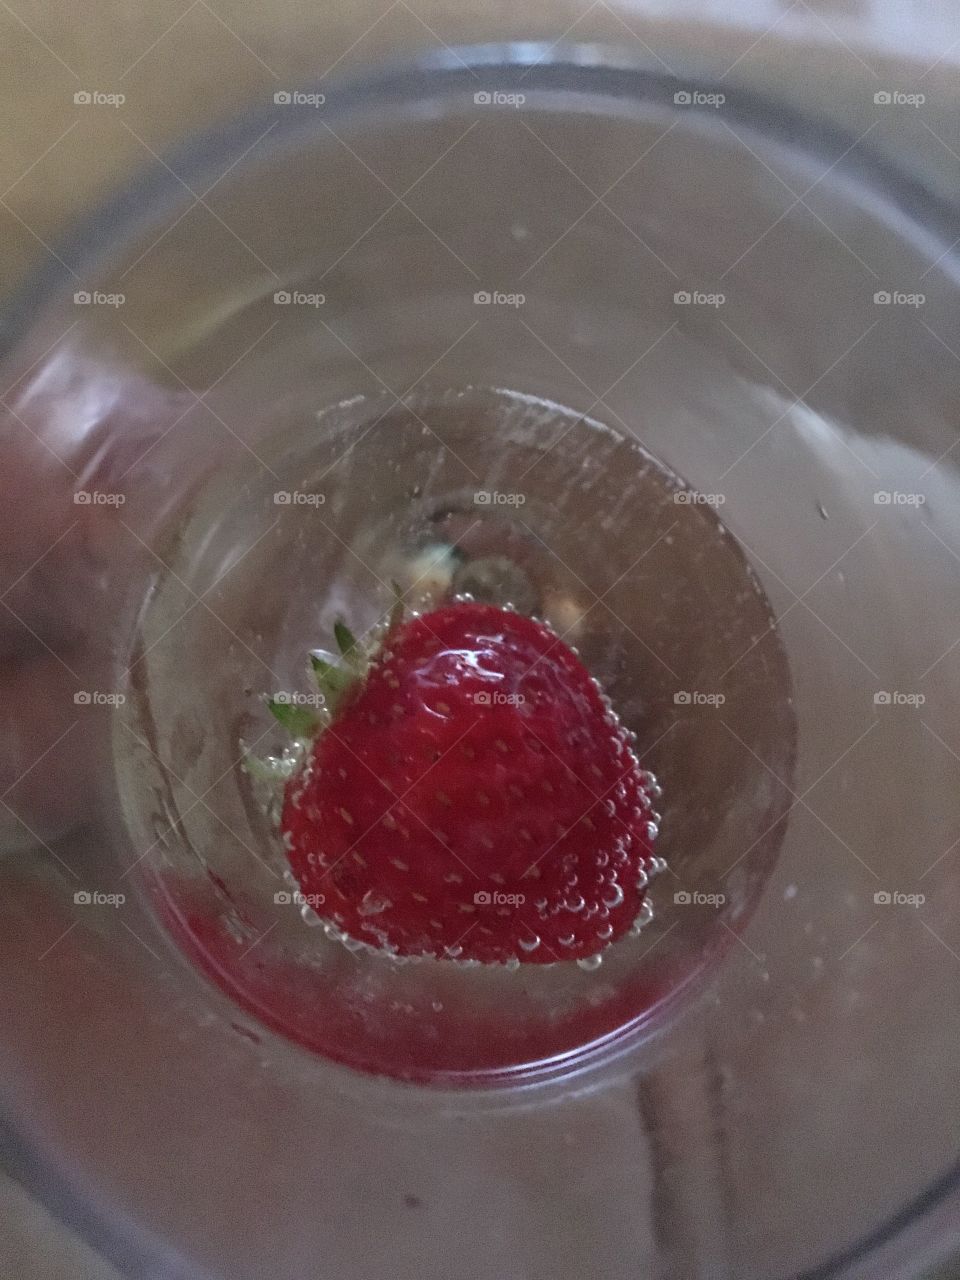 Strawberry in Cava